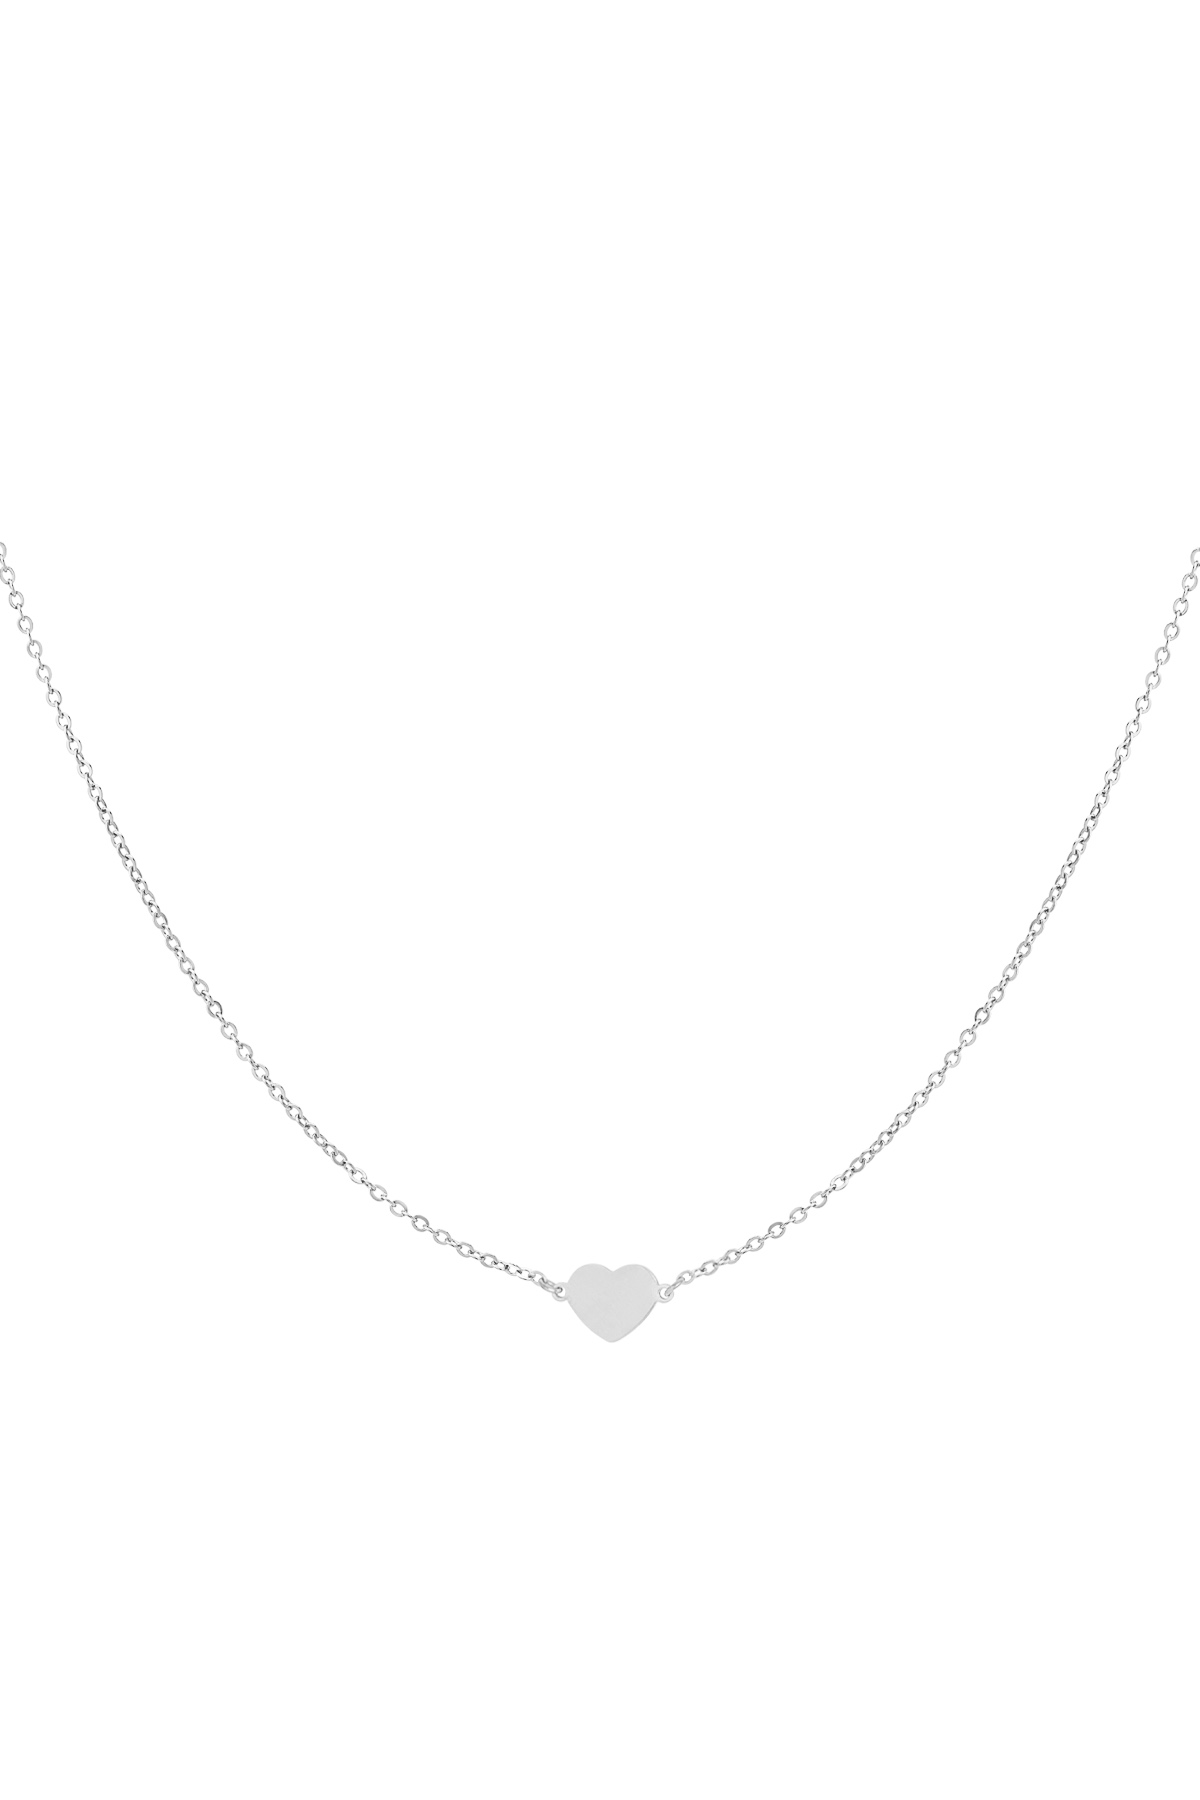 Halskette für immer verbunden - Silber h5 Bild3